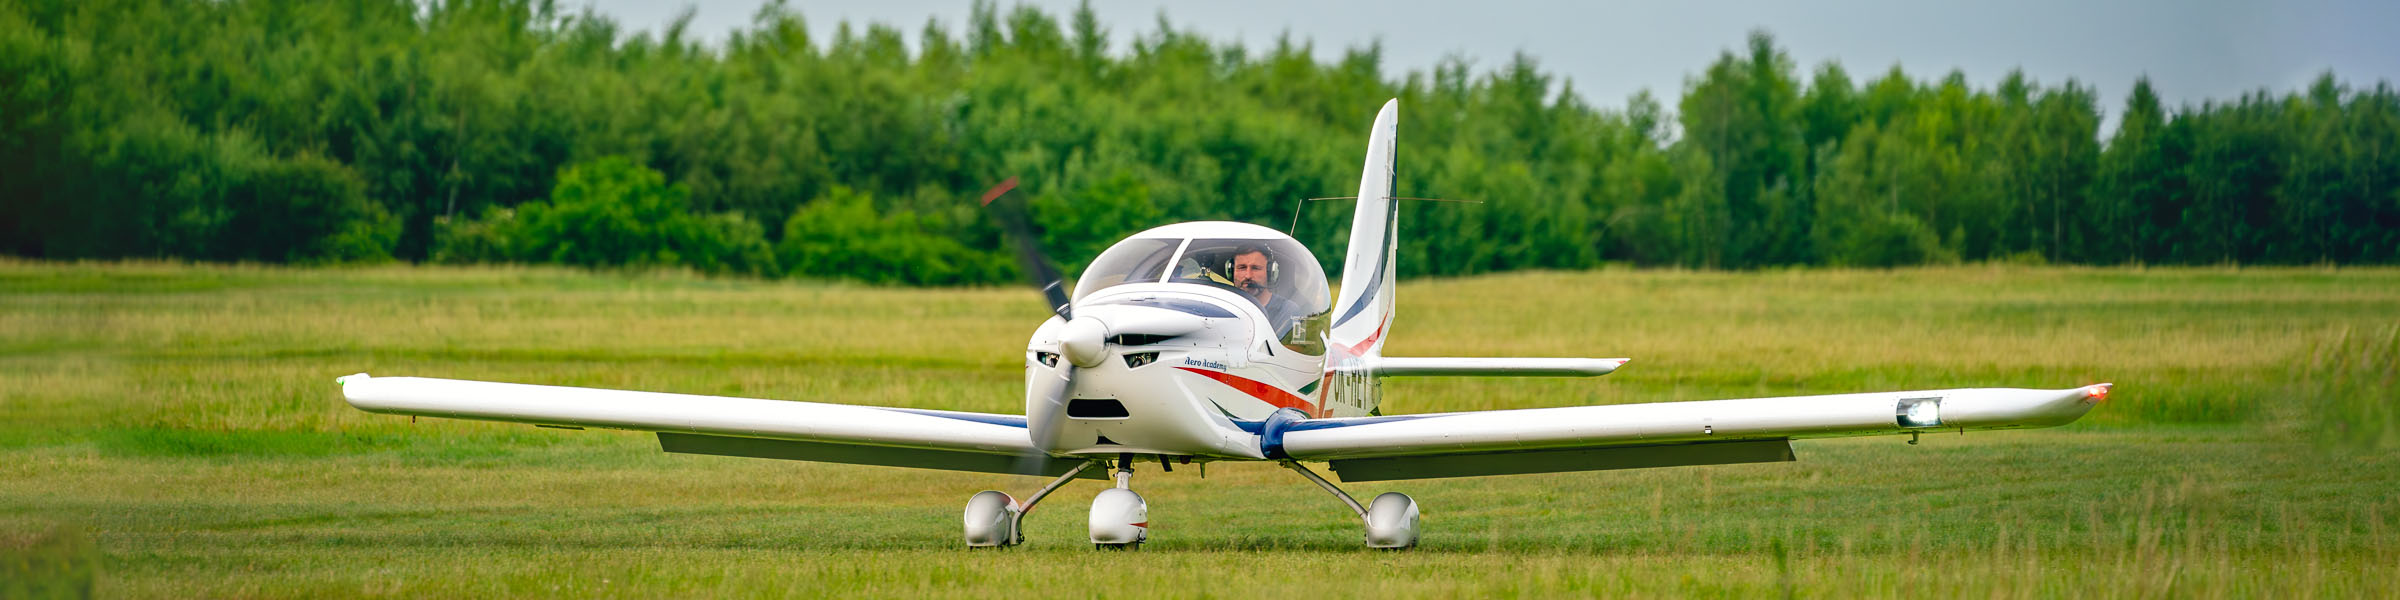 Letadlo SportStar RTC